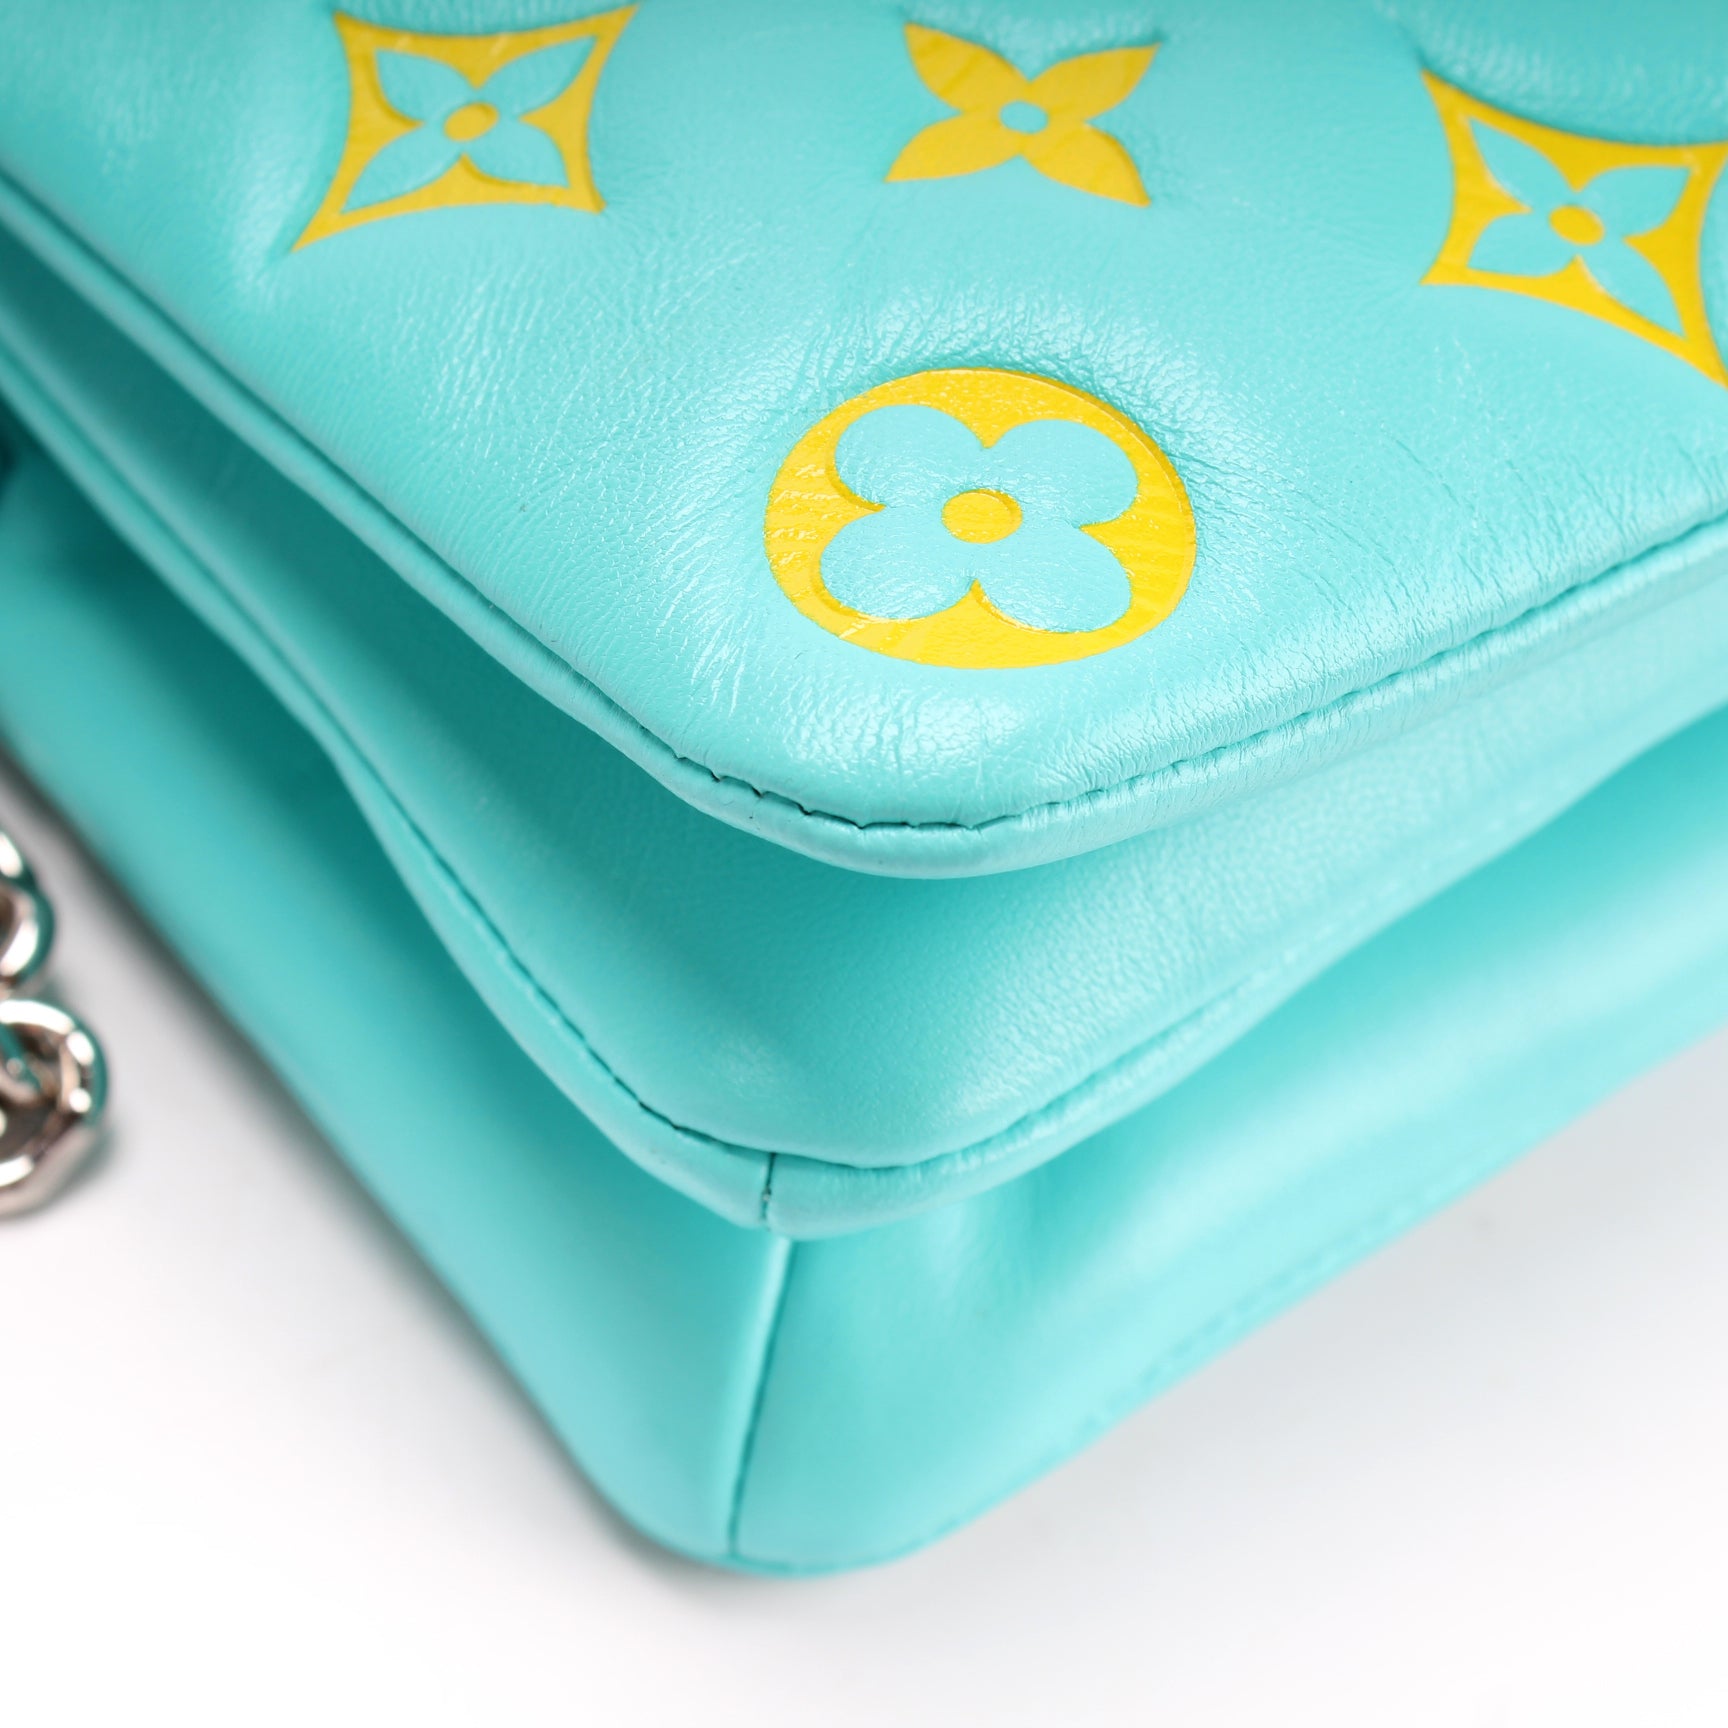 Pochette Coussin – Keeks Designer Handbags